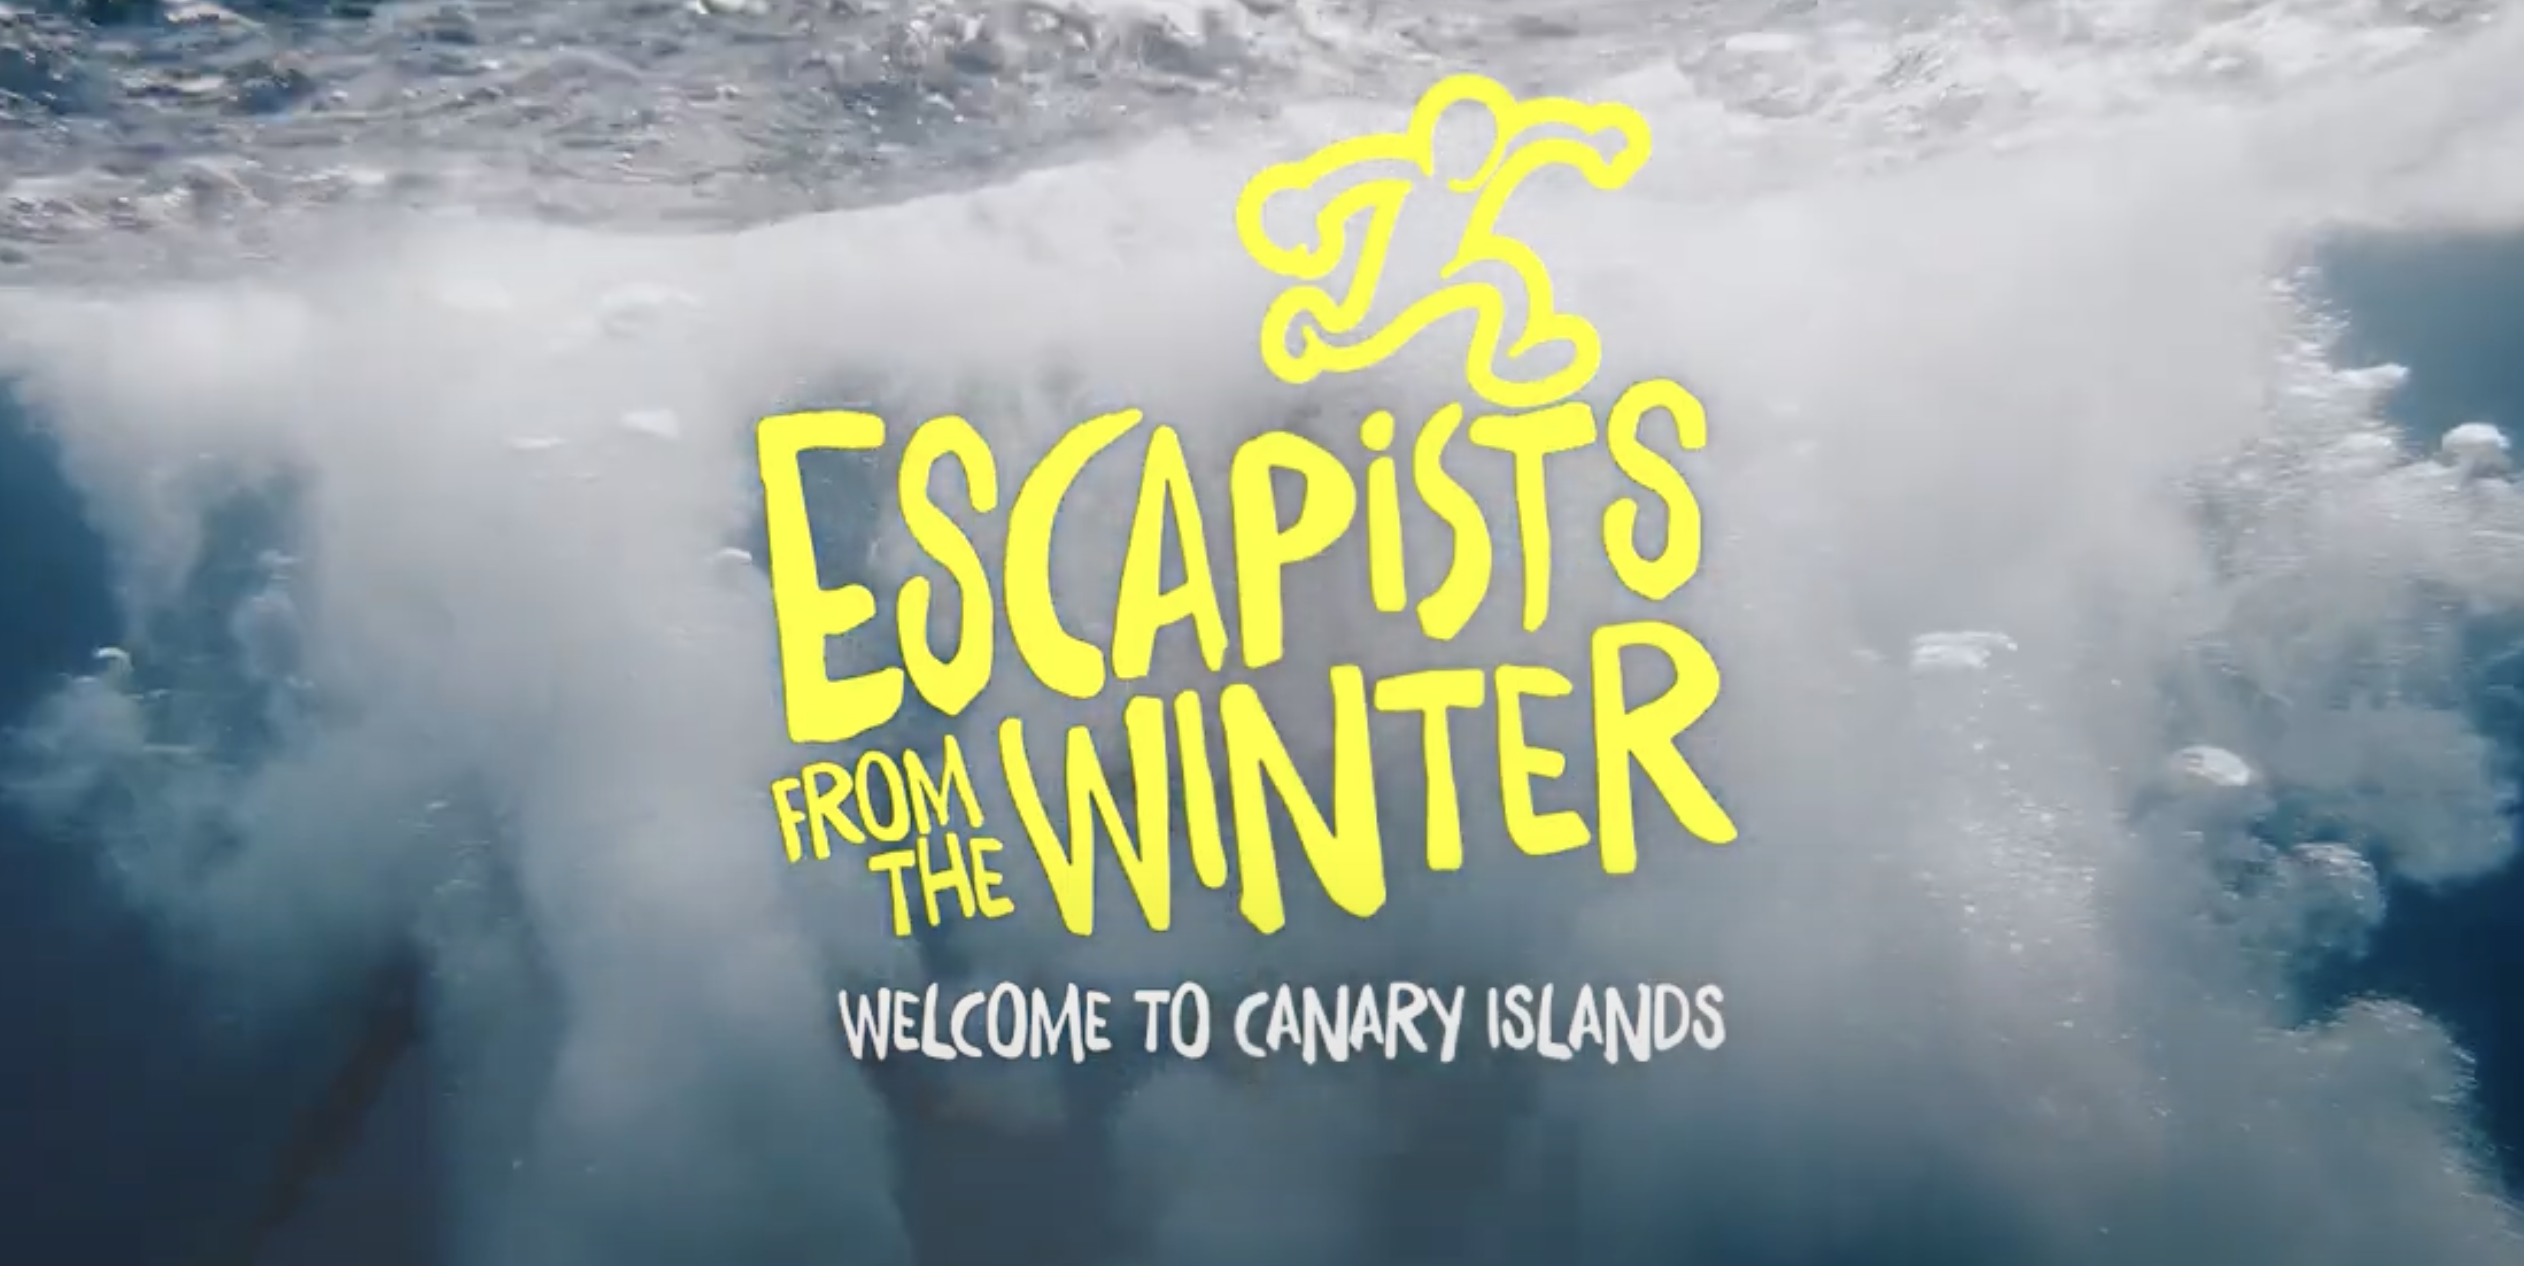 Campaña Turismo de Canarias "escapistas del invierno"